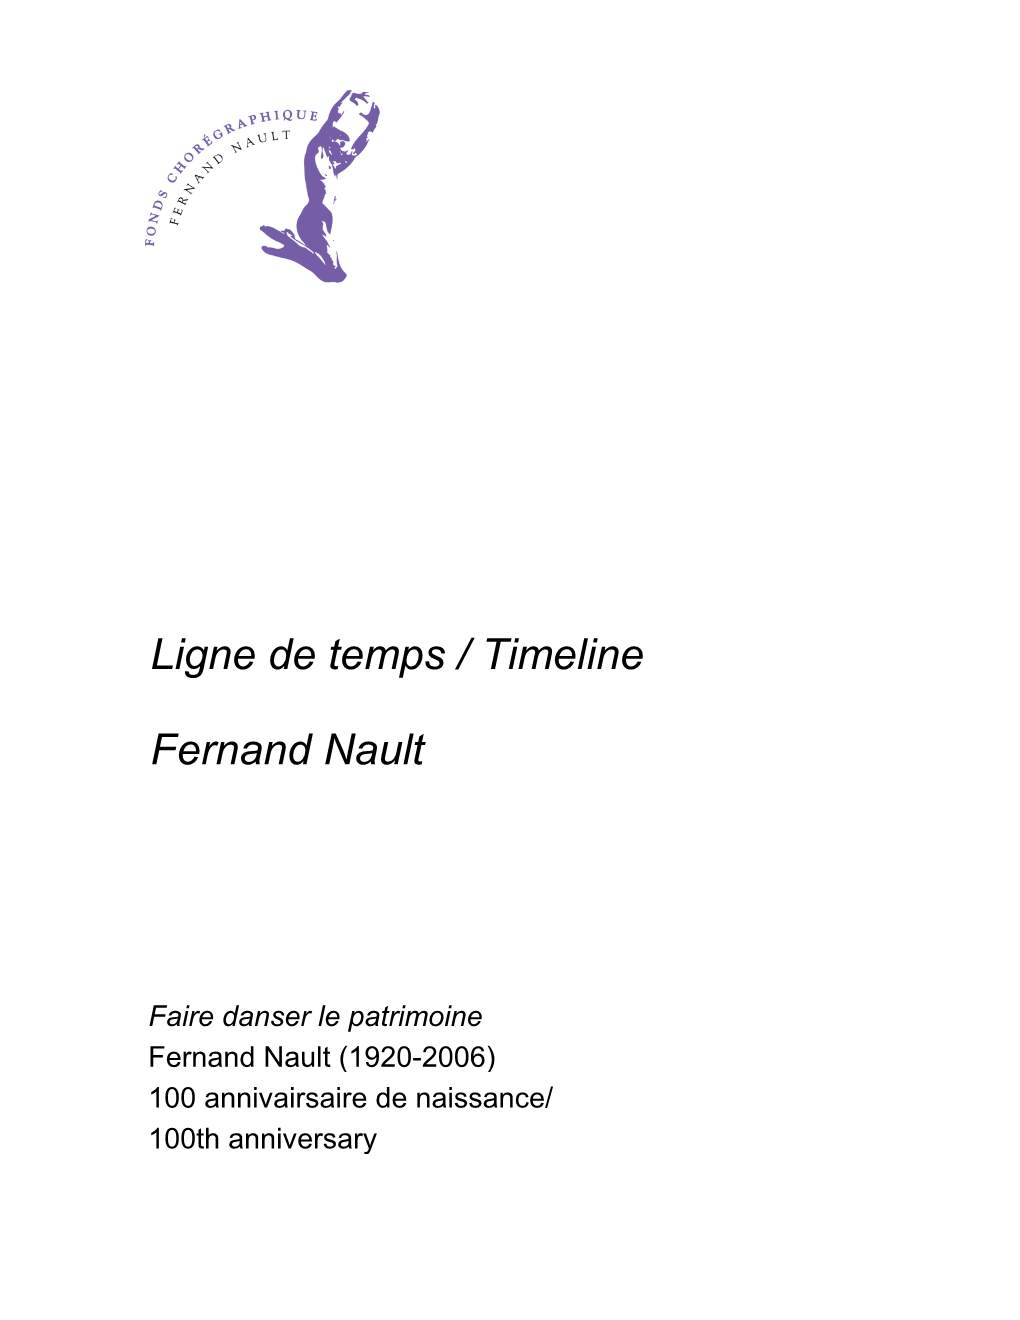 Fernand Nault Ligne De Temps / Timeline